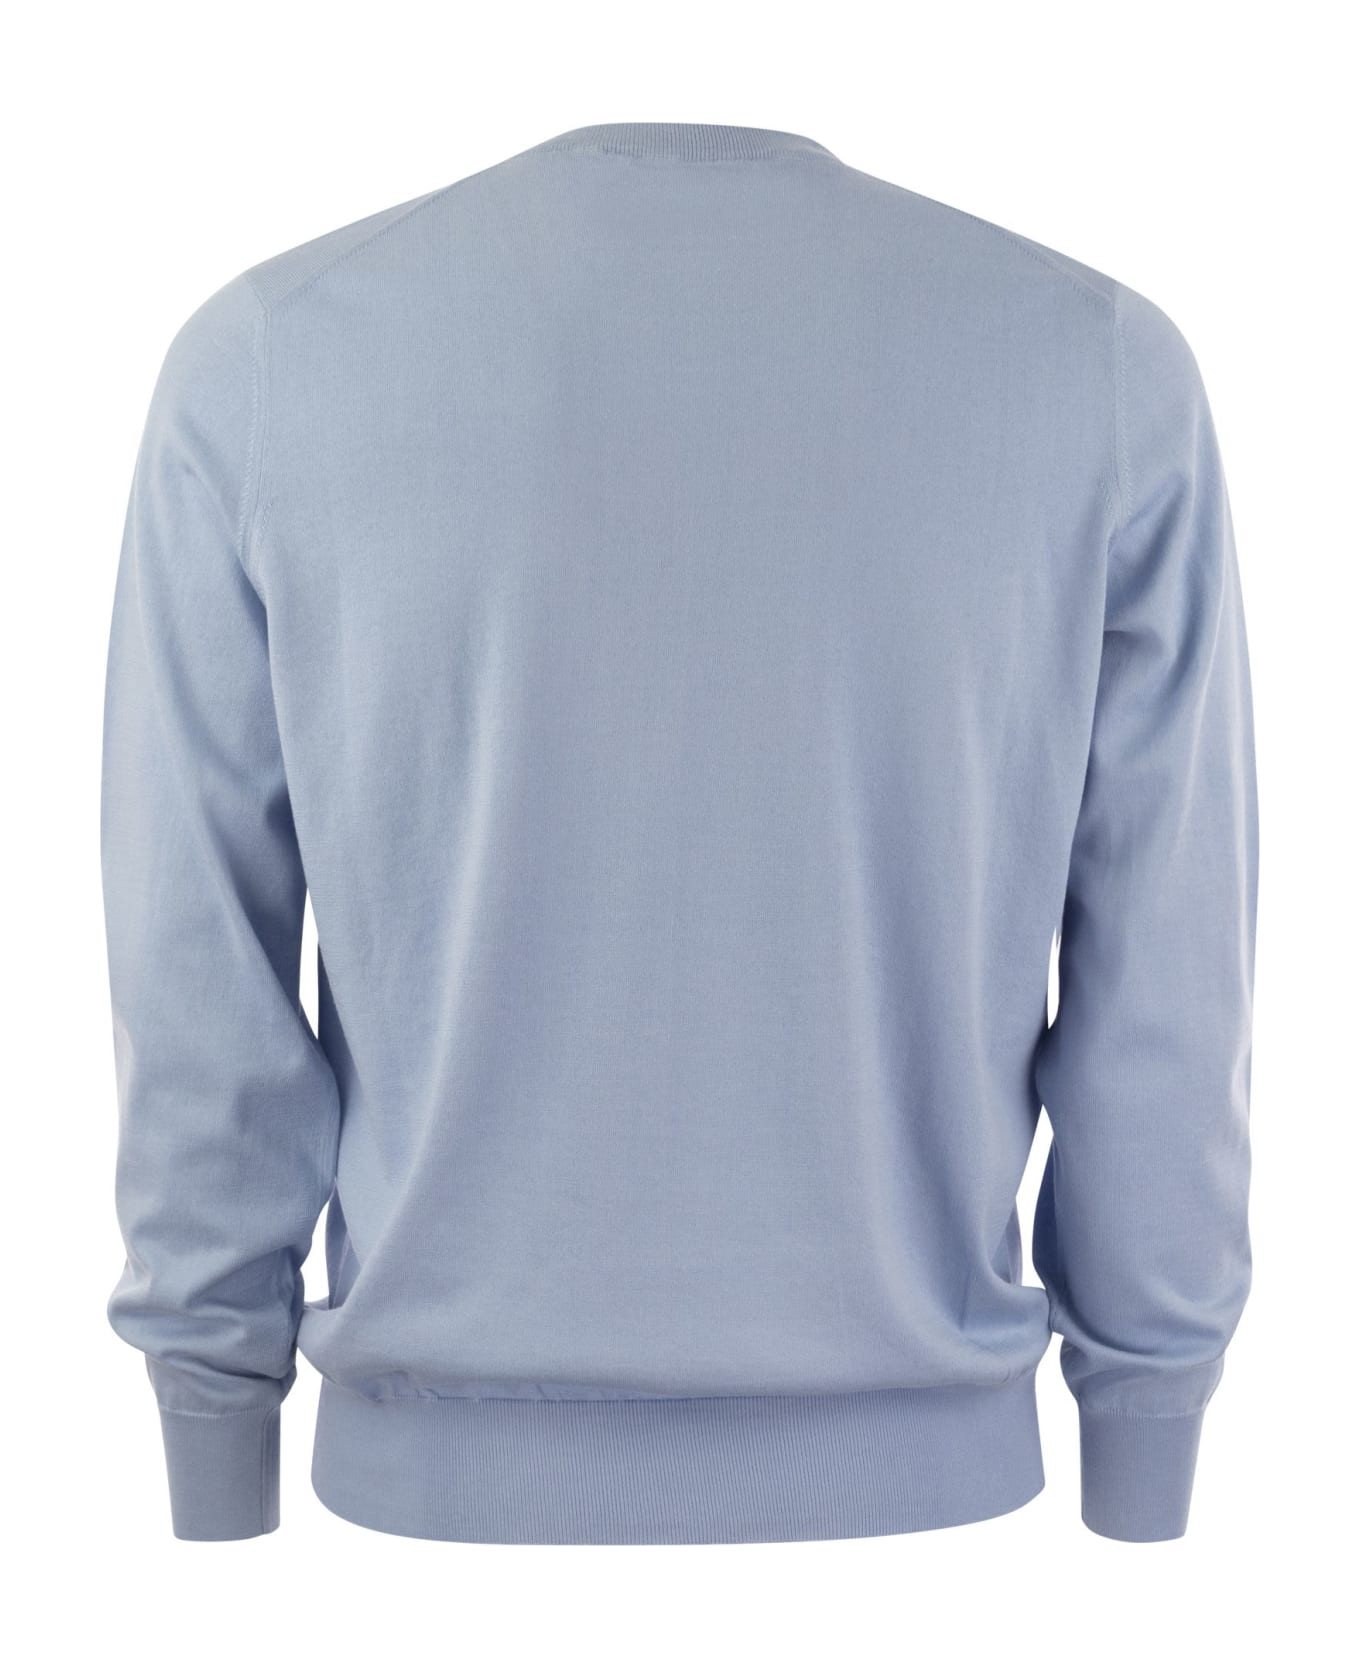 Brunello Cucinelli Lightweight Cotton Jersey - Light Blue フリース